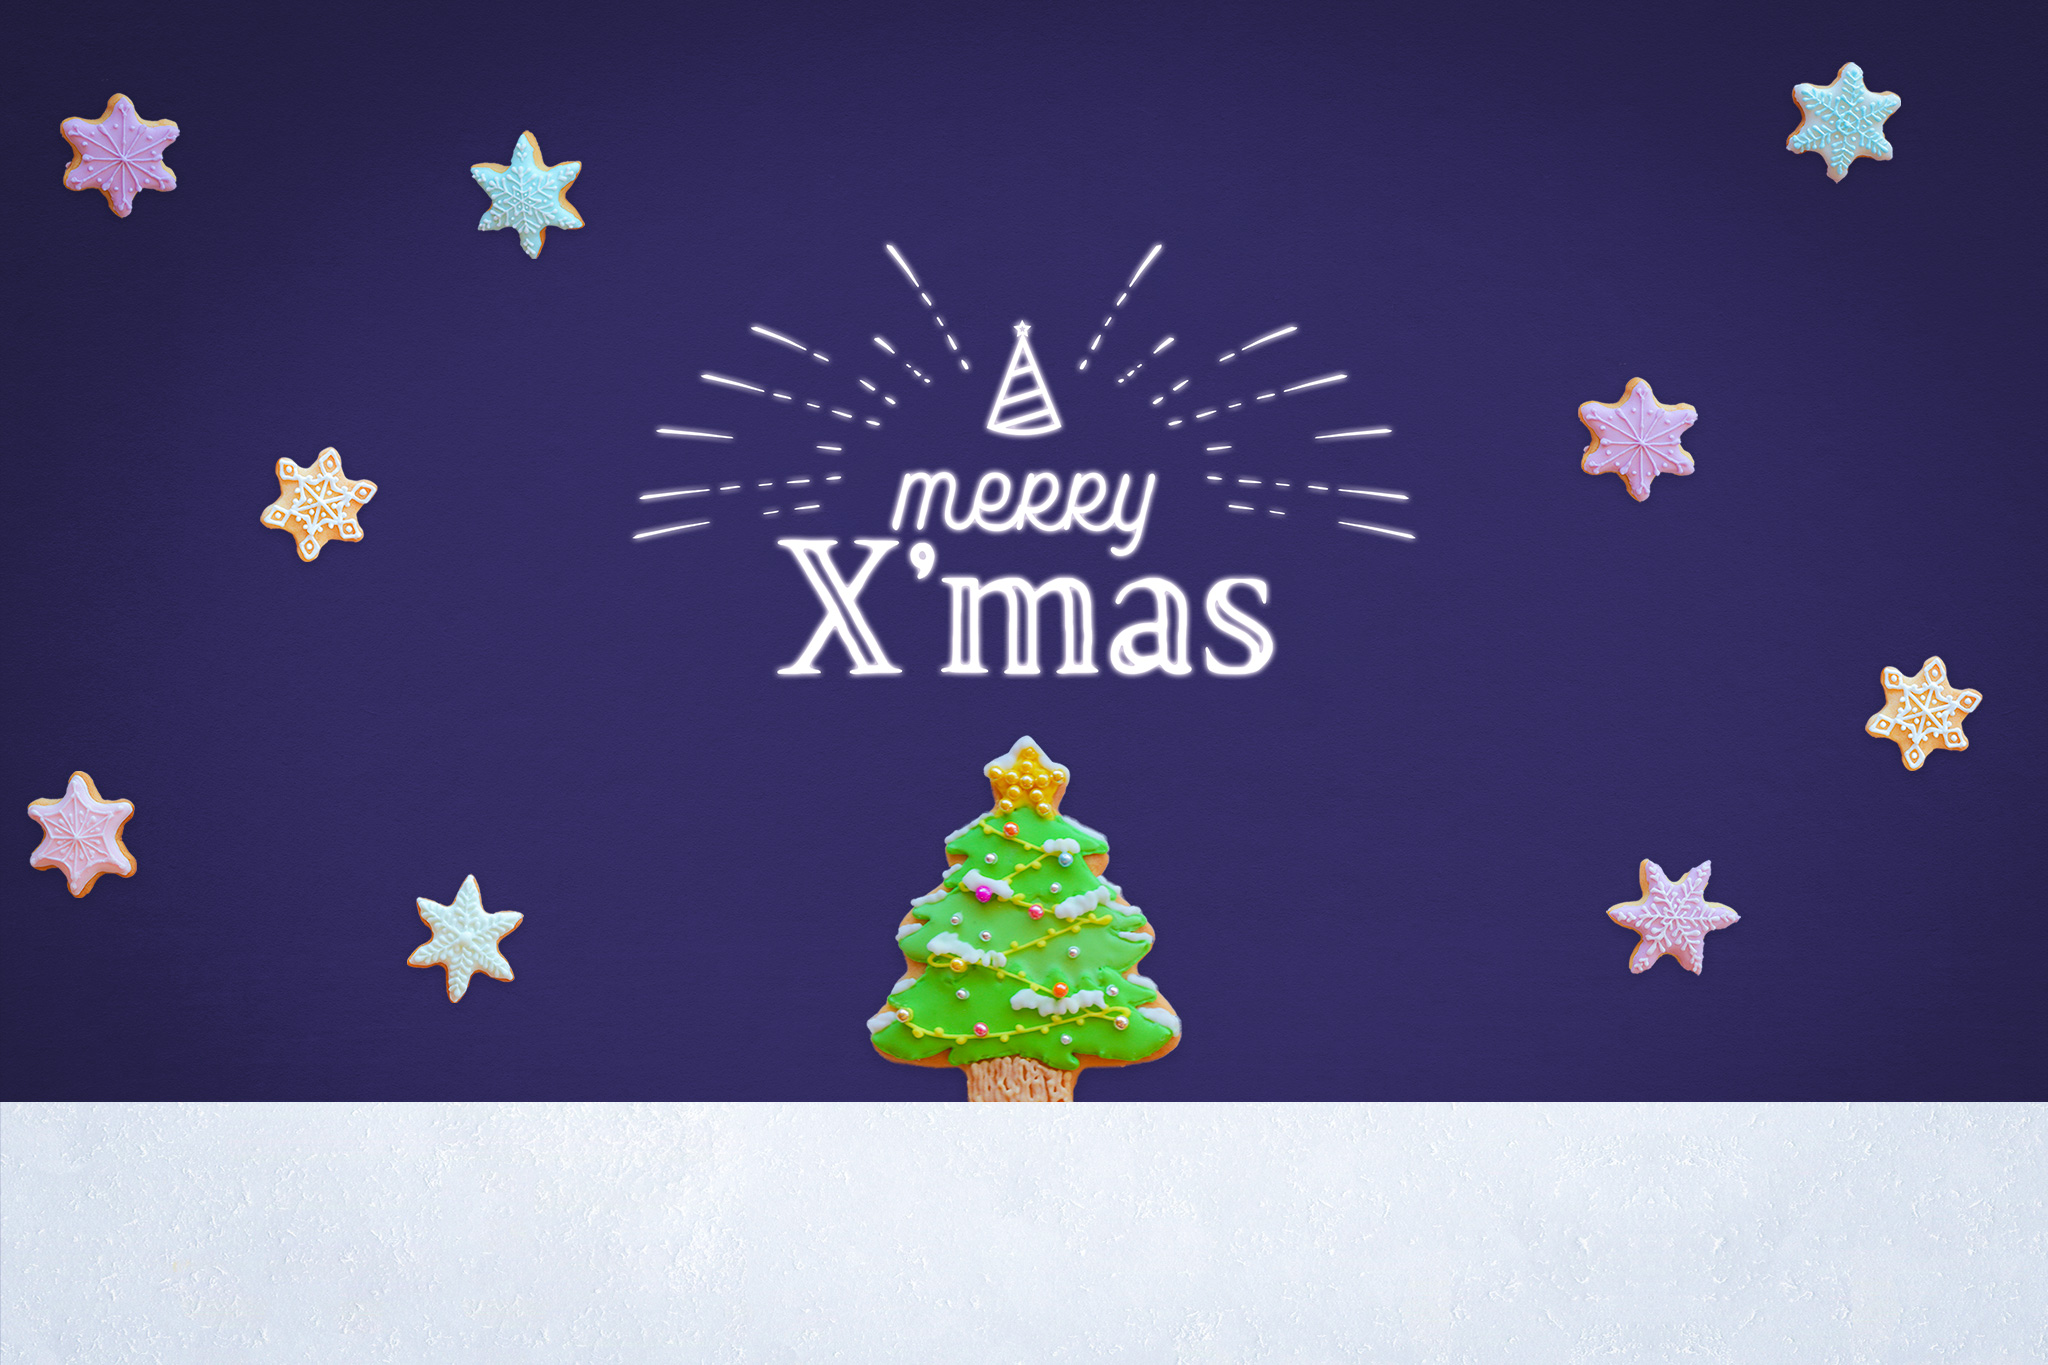 クリスマスはgirly Dropの 無料で使えるオシャレなクリスマスカード を贈ろう おしゃれなフリー写真素材 Girly Drop